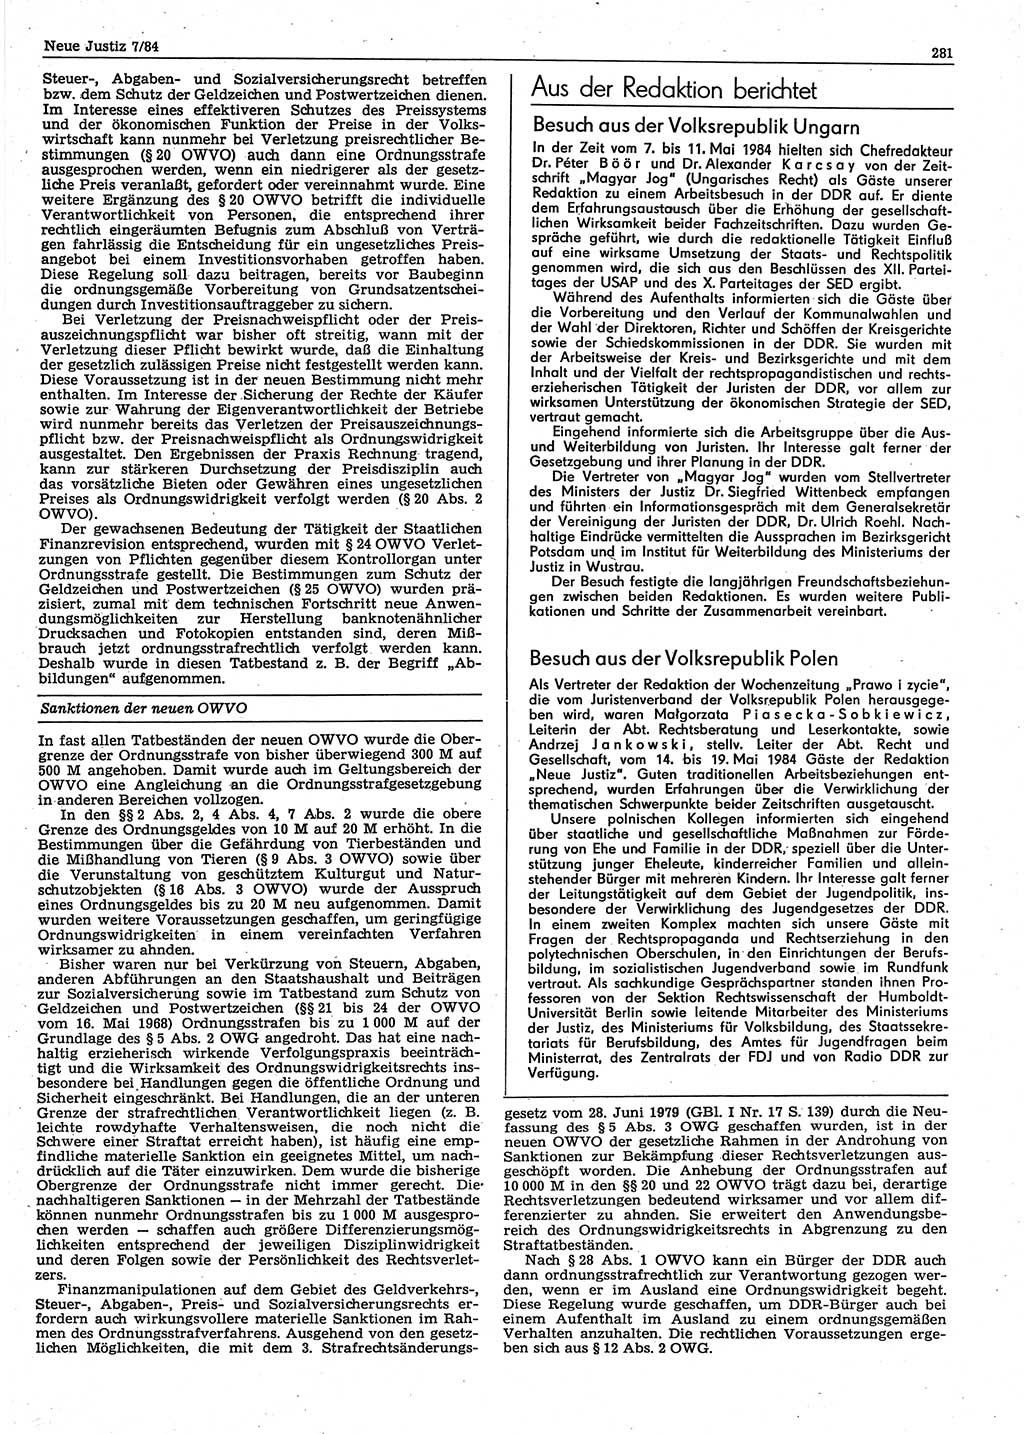 Neue Justiz (NJ), Zeitschrift für sozialistisches Recht und Gesetzlichkeit [Deutsche Demokratische Republik (DDR)], 38. Jahrgang 1984, Seite 281 (NJ DDR 1984, S. 281)